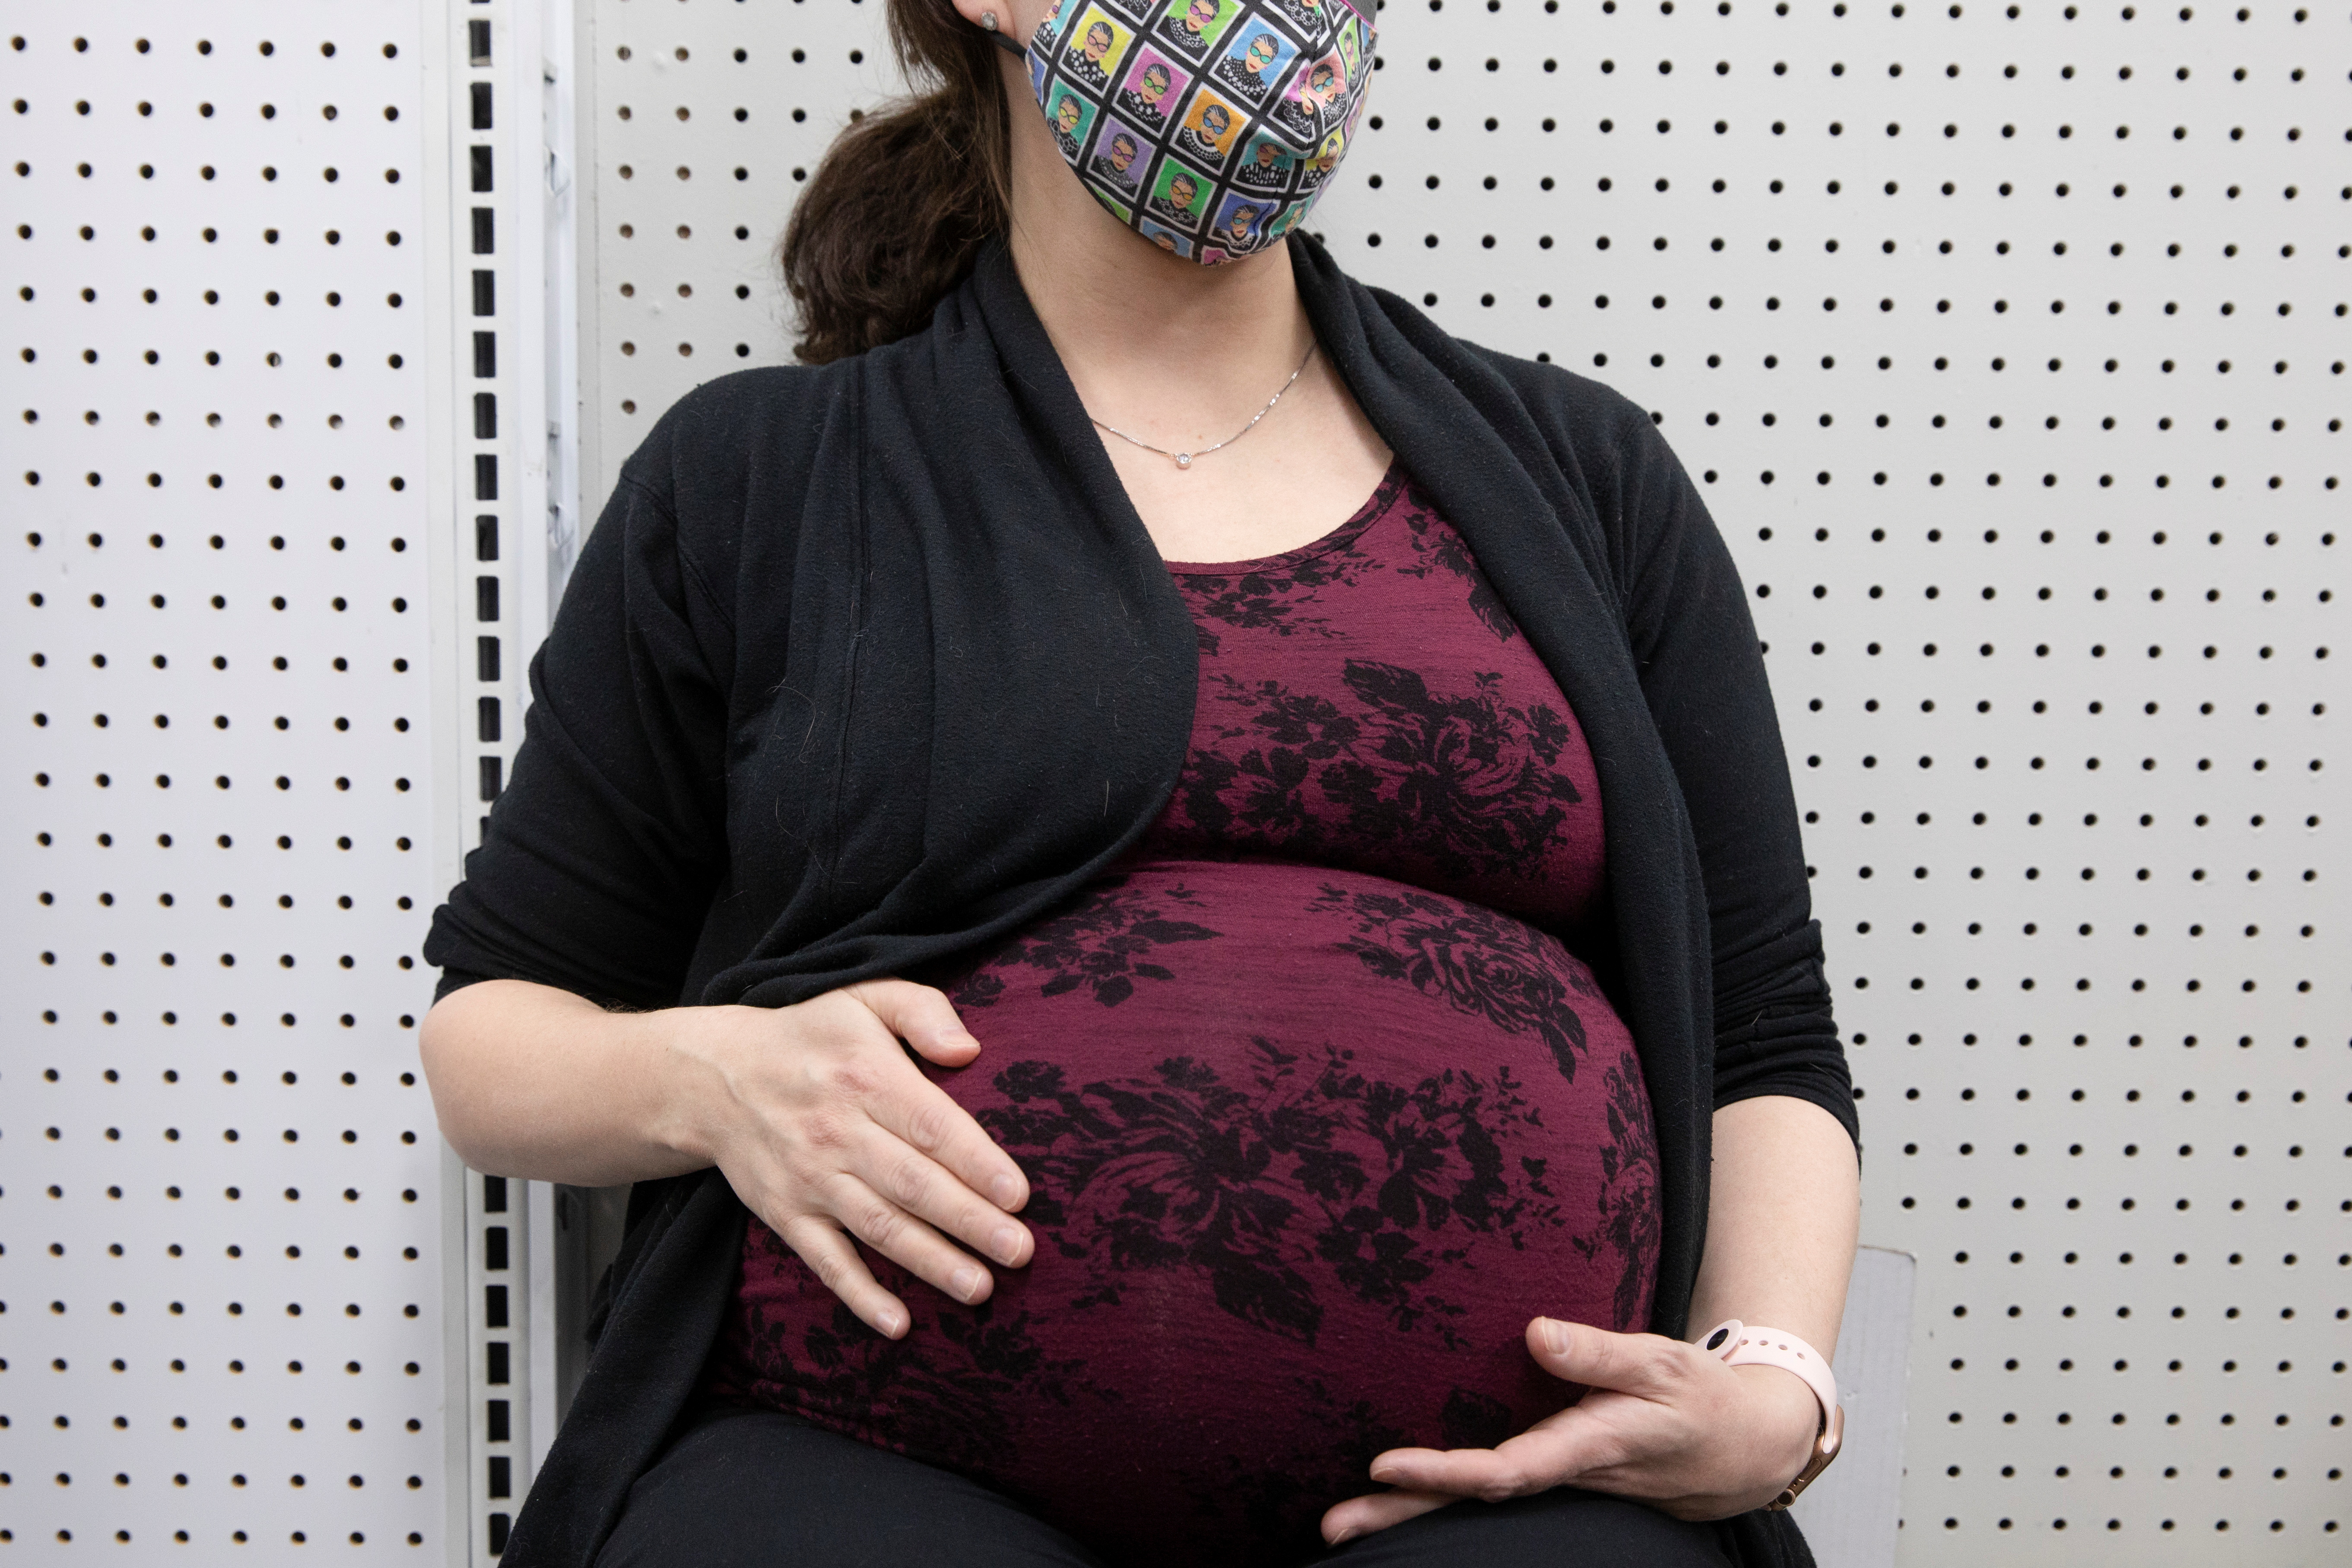 Las personas que cursan un embarazo pueden ser afectadas por la infección por el coronavirus: tienen más probabilidades de tener un parto prematuro y pérdida del embarazo / REUTERS/Hannah Beier